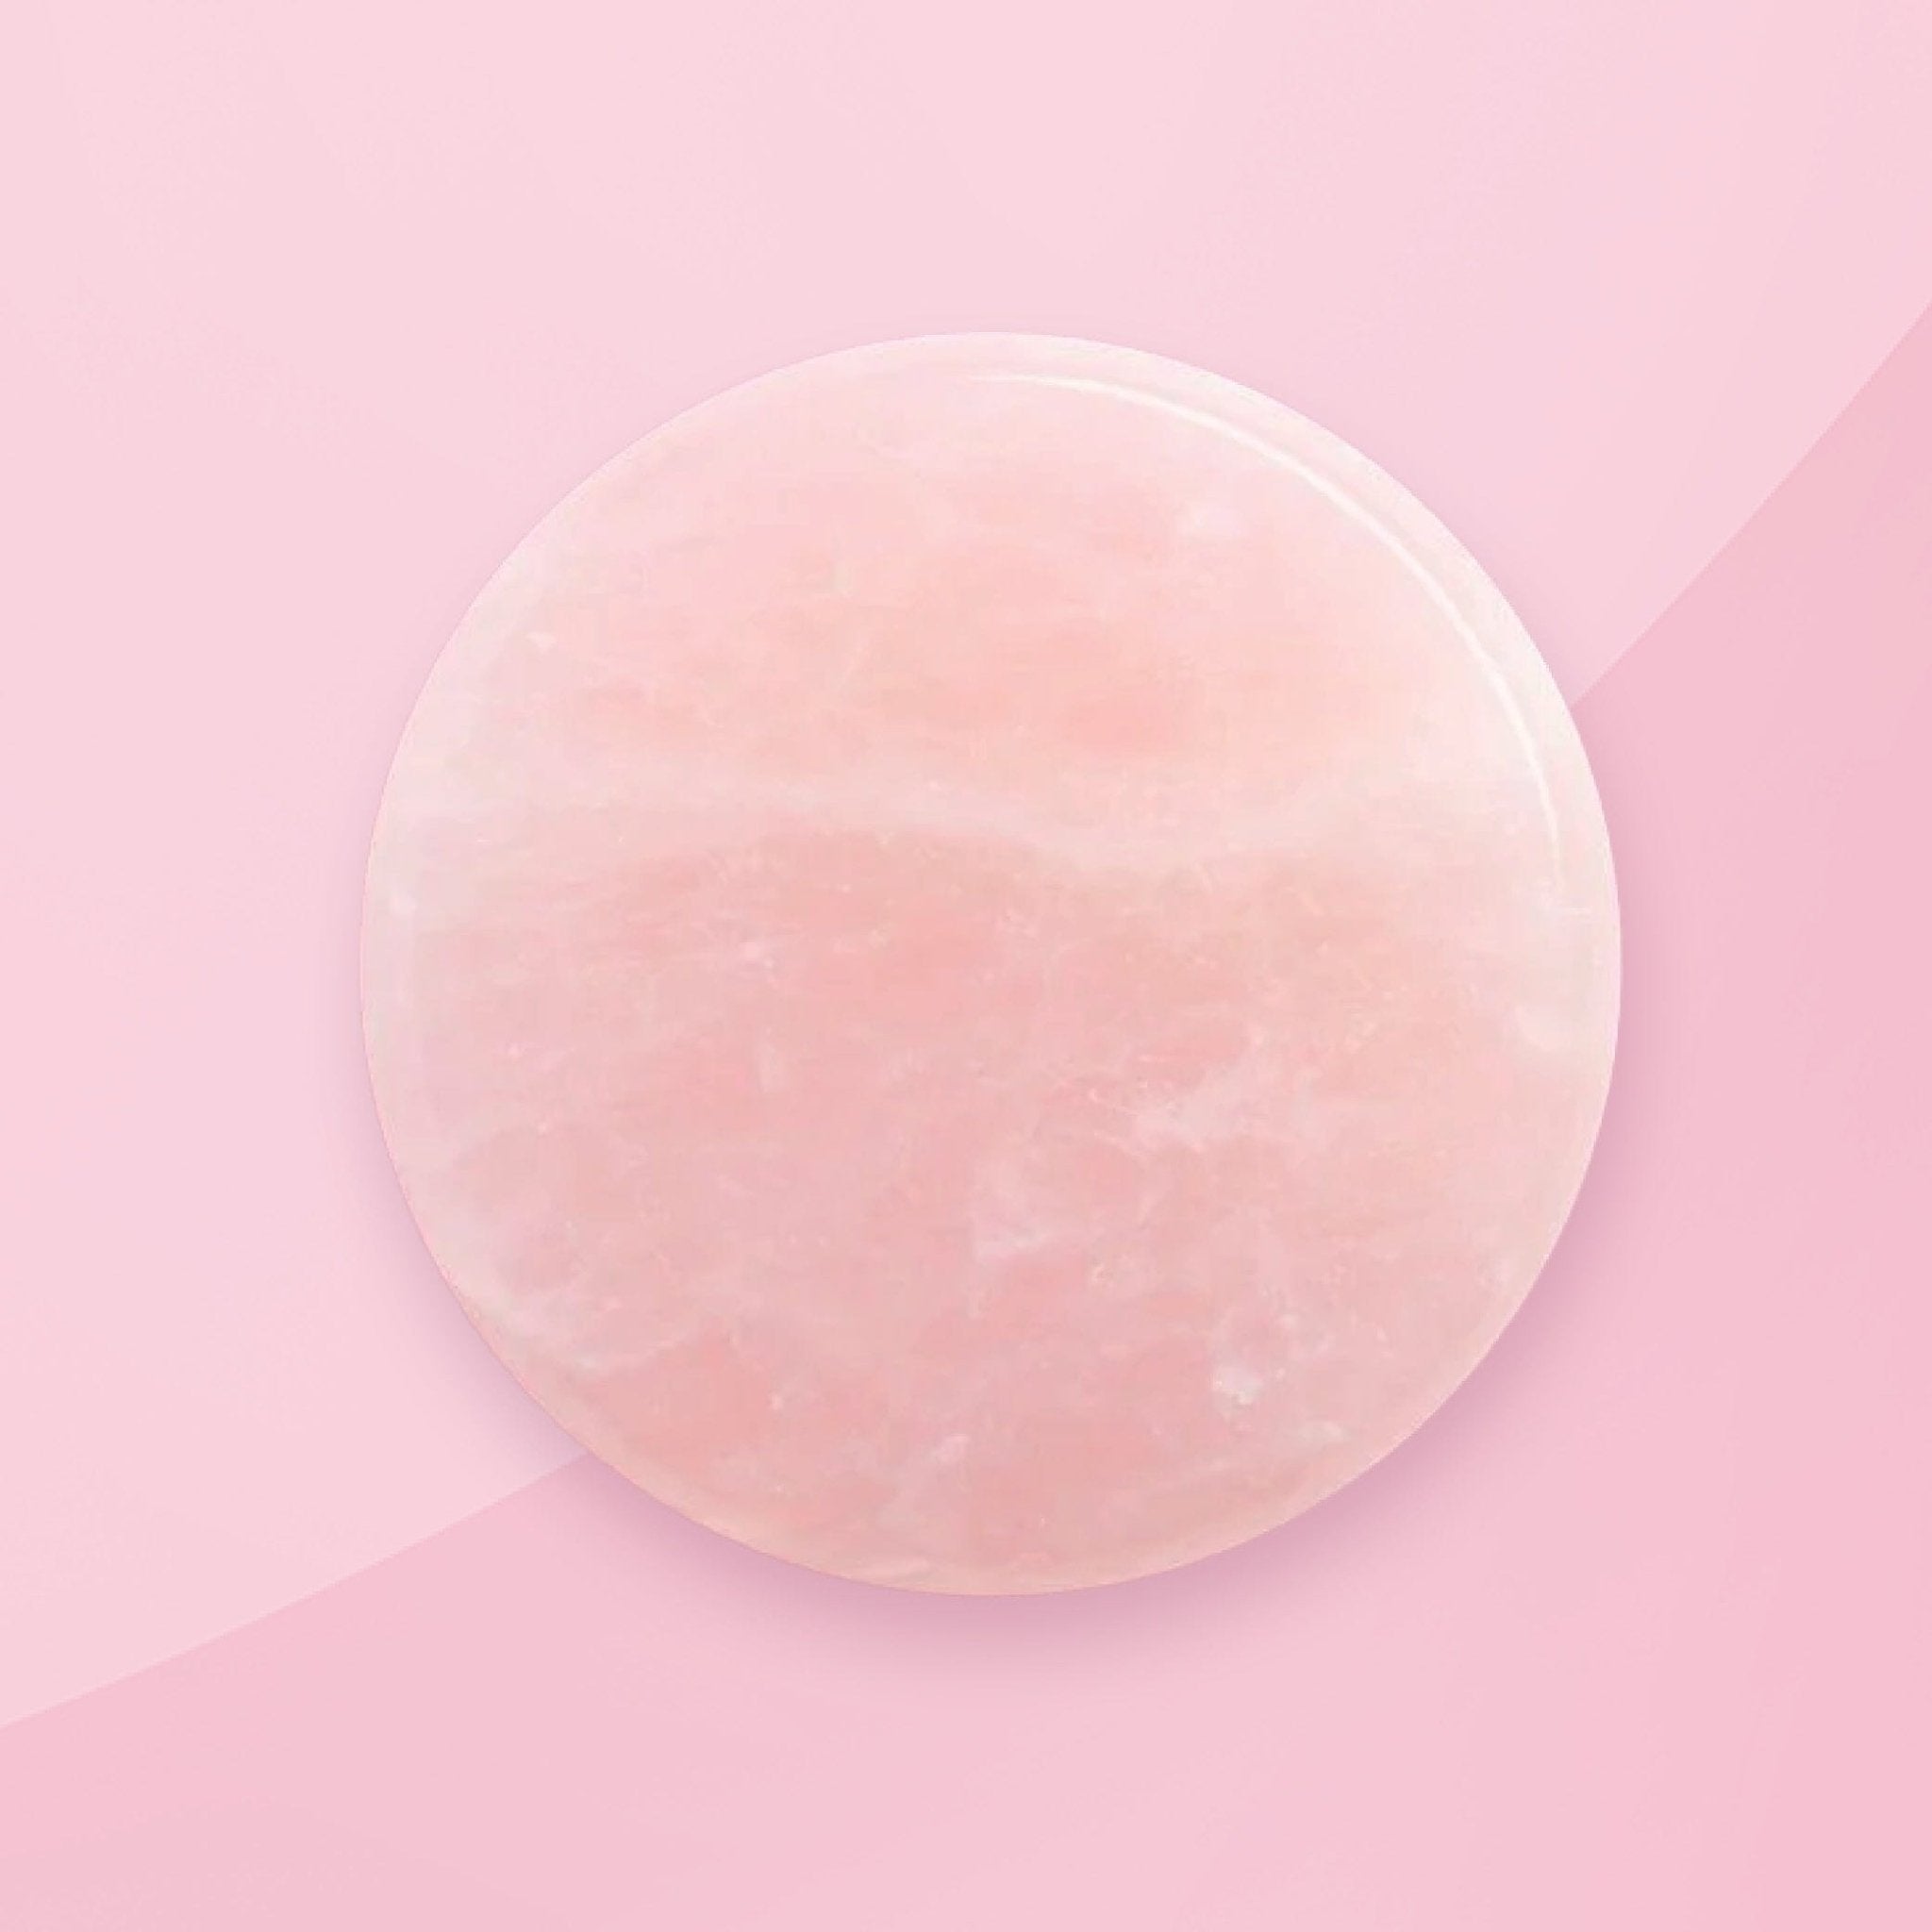 Pink Jade Stone for Lash Glue | Eyelash Salon Supplies - One V Salon